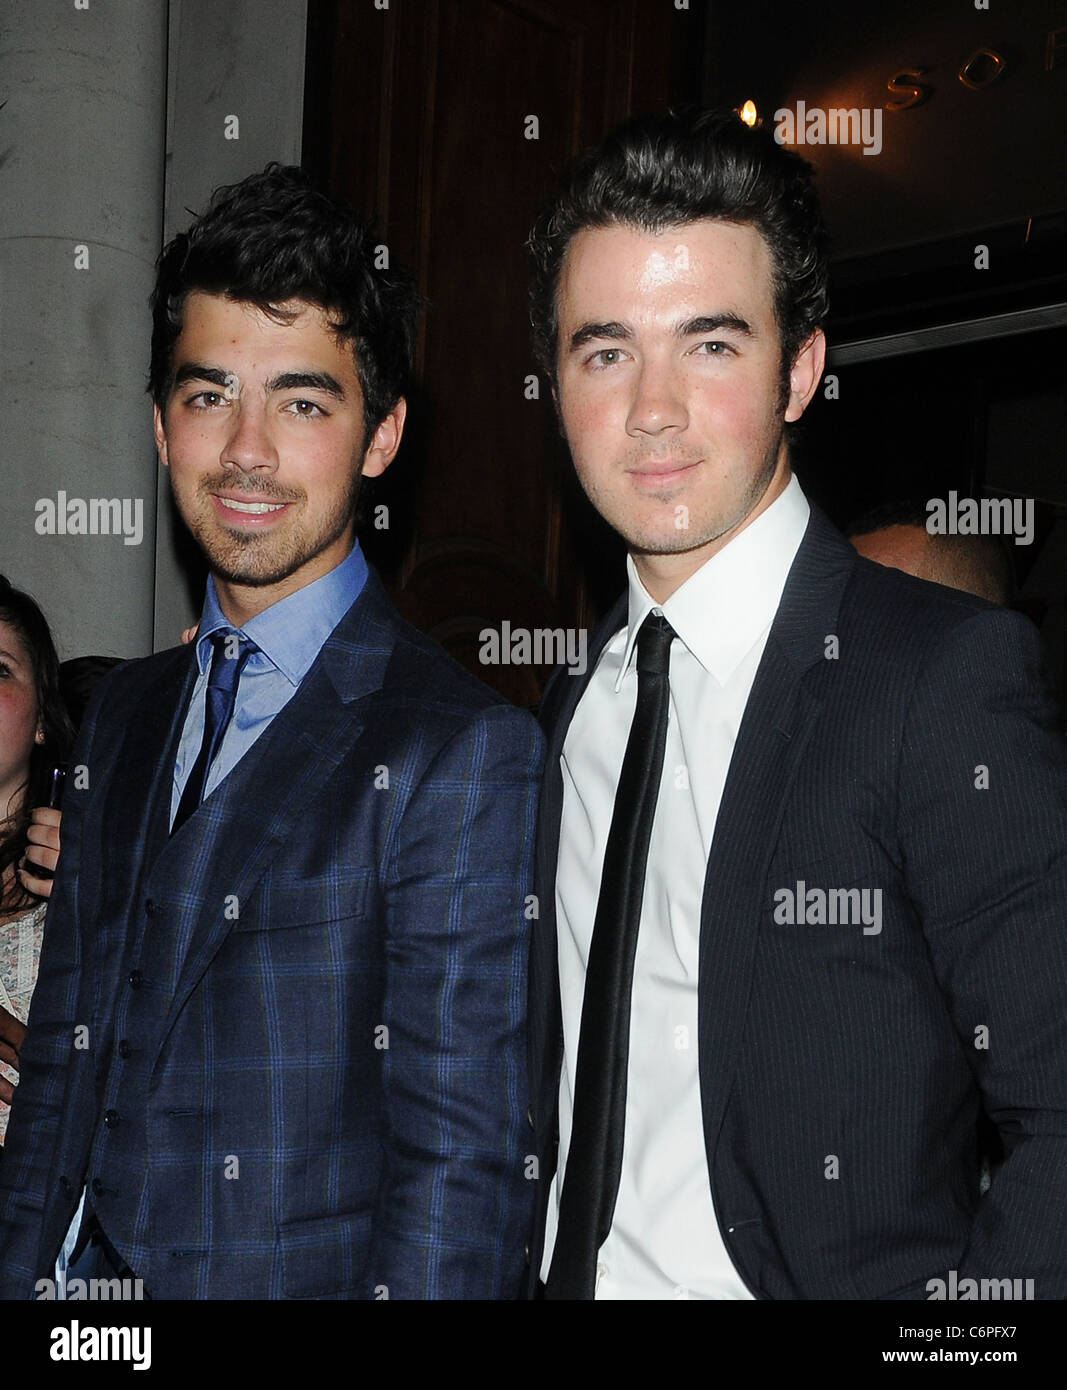 Kommen Sie Joe Jonas Und Kevin Jonas Rechts Von Den Jonas Brothers Wieder In Ihrem Hotel Nach Beobachtete Ihren Bruder Nick Jonas Stockfotografie Alamy